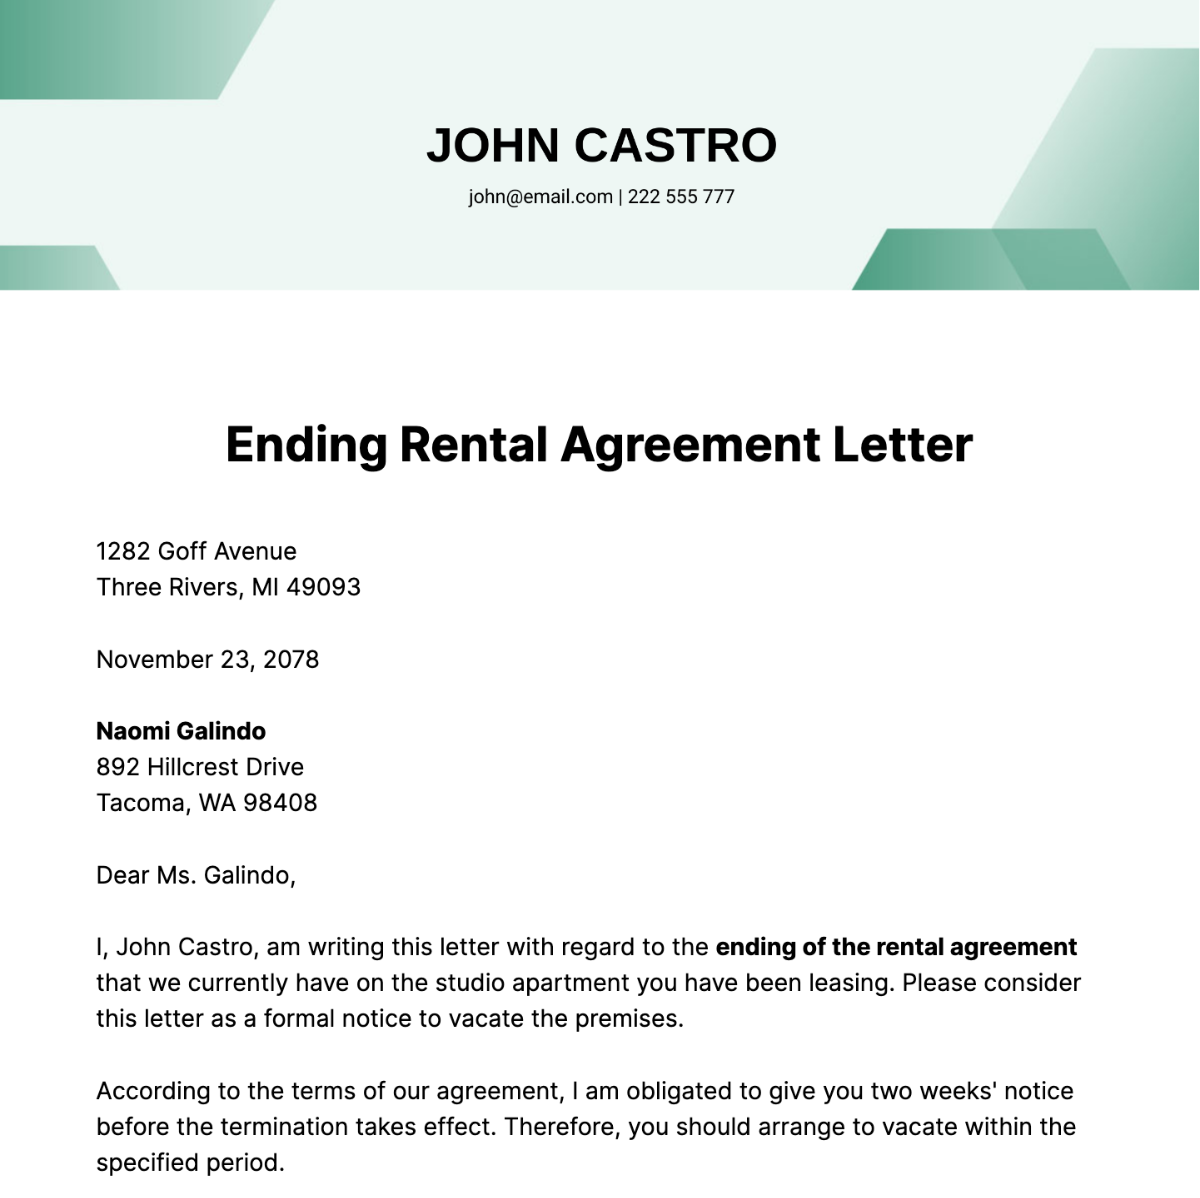 Ending Rental Agreement Letter Template